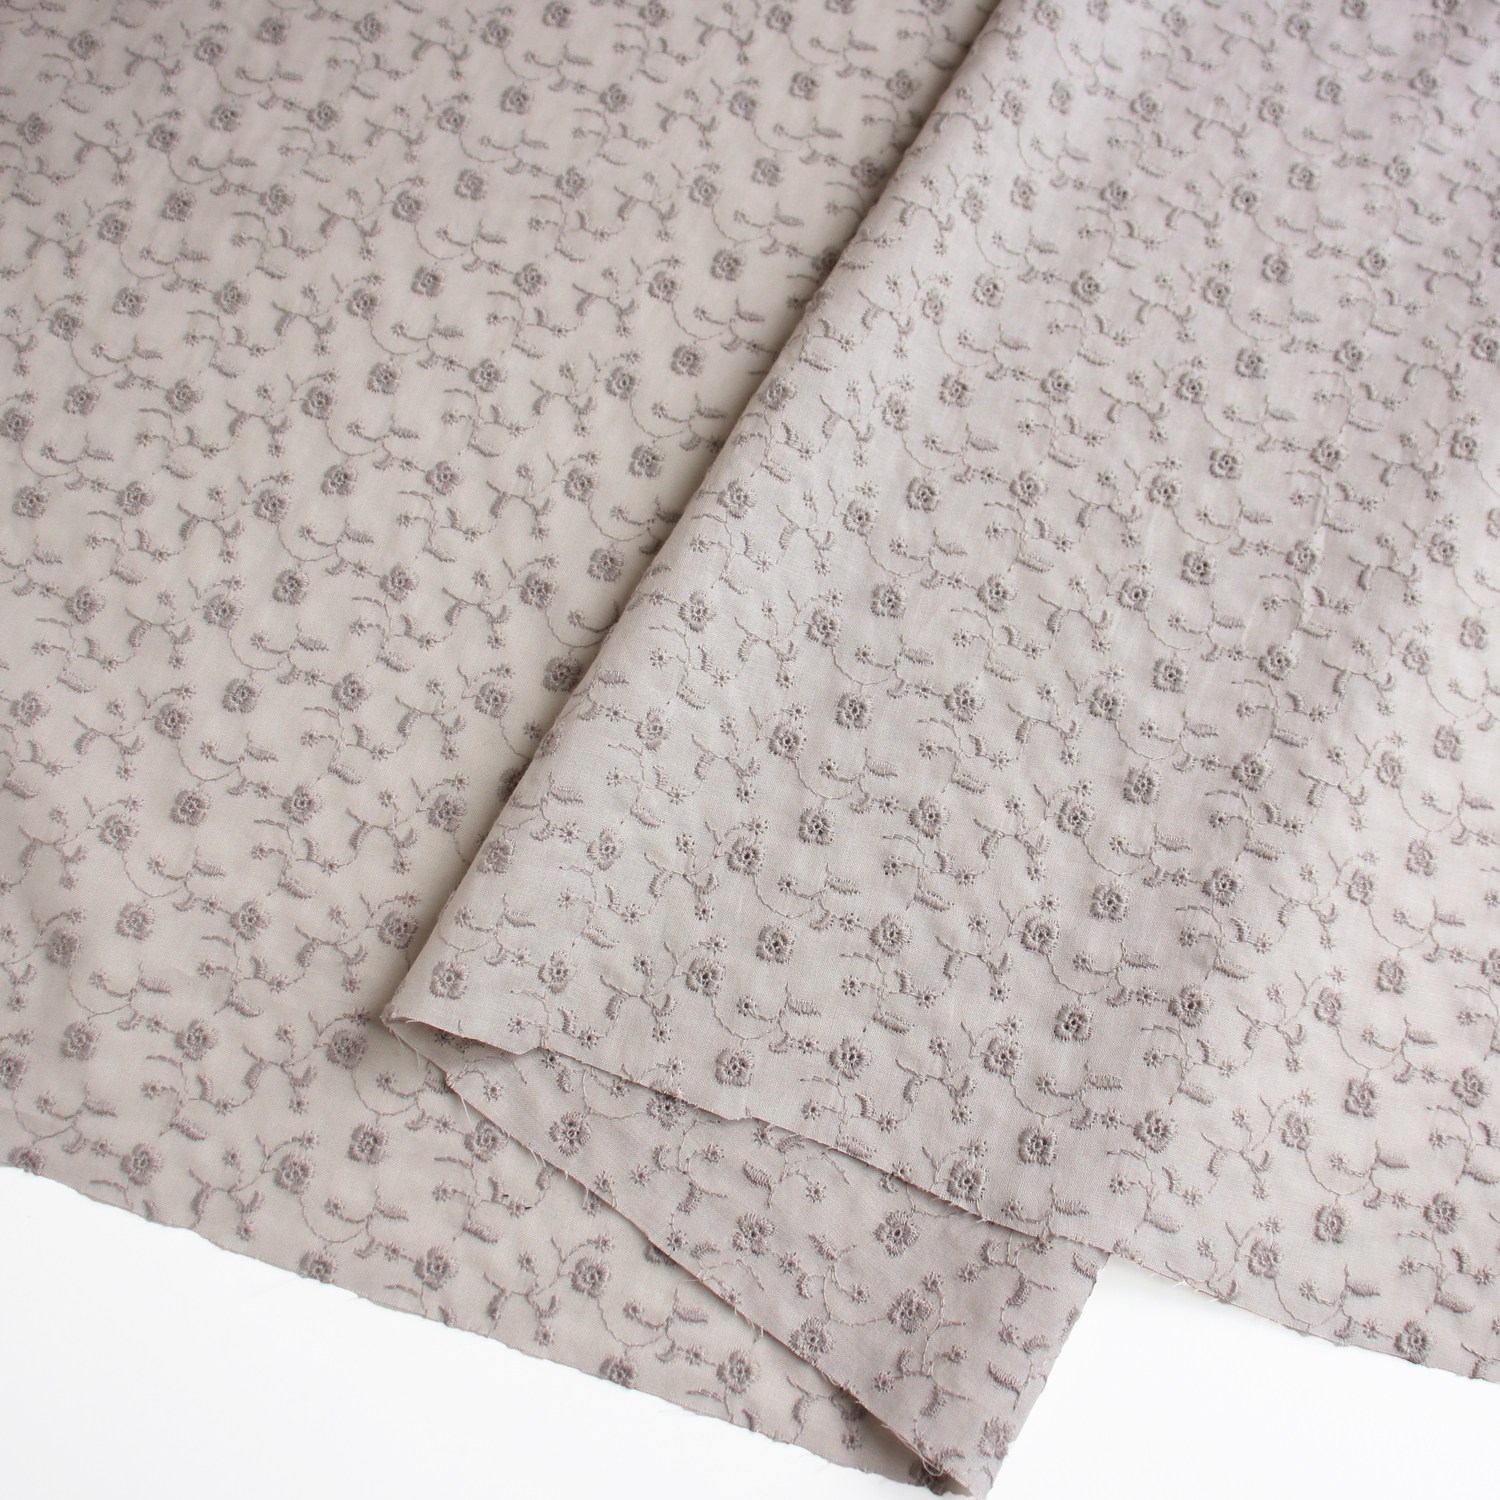 AL1010-85 cotton lace fabric, Width 100cm, 1m/unit (m)